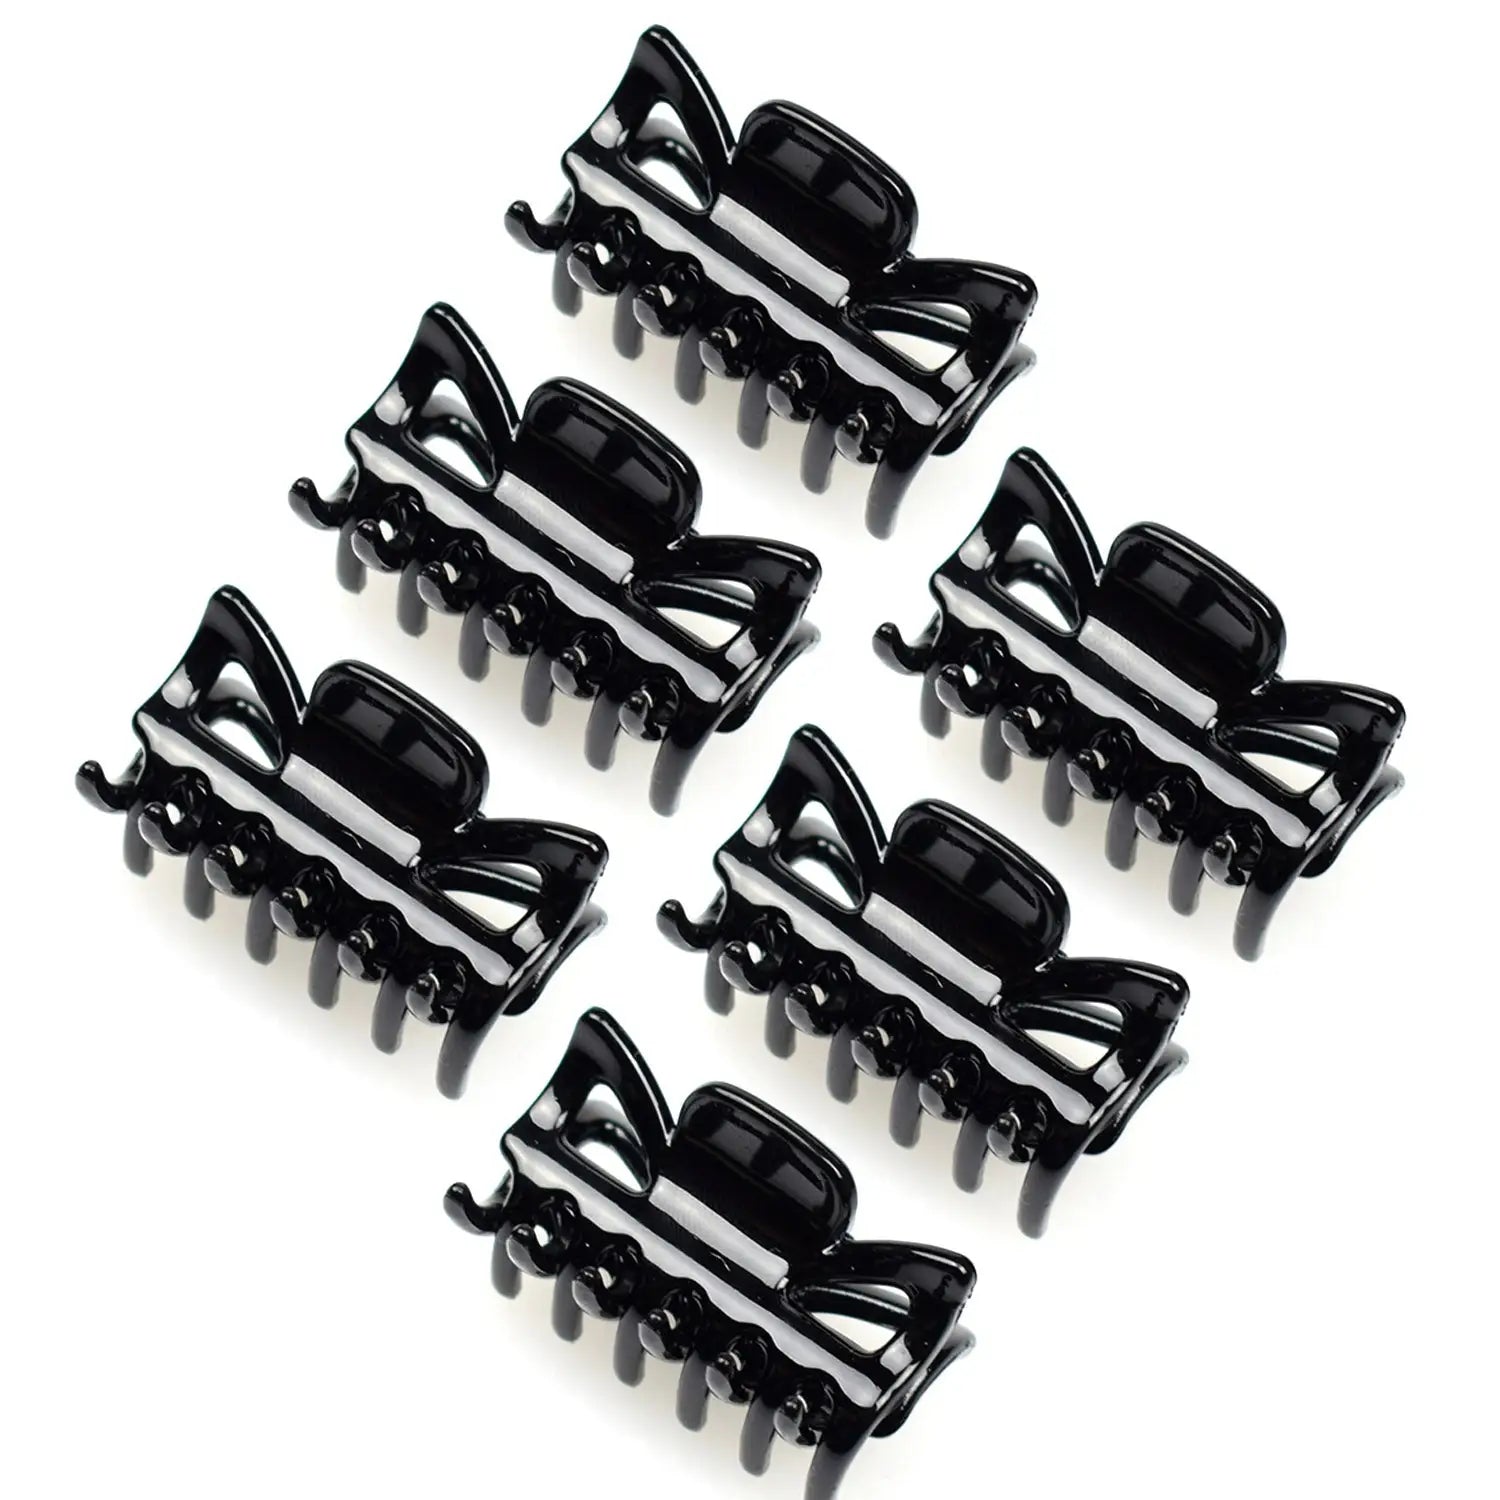 Black plastic car shaped buttons hair claw clips set, 6pcs - 4cm